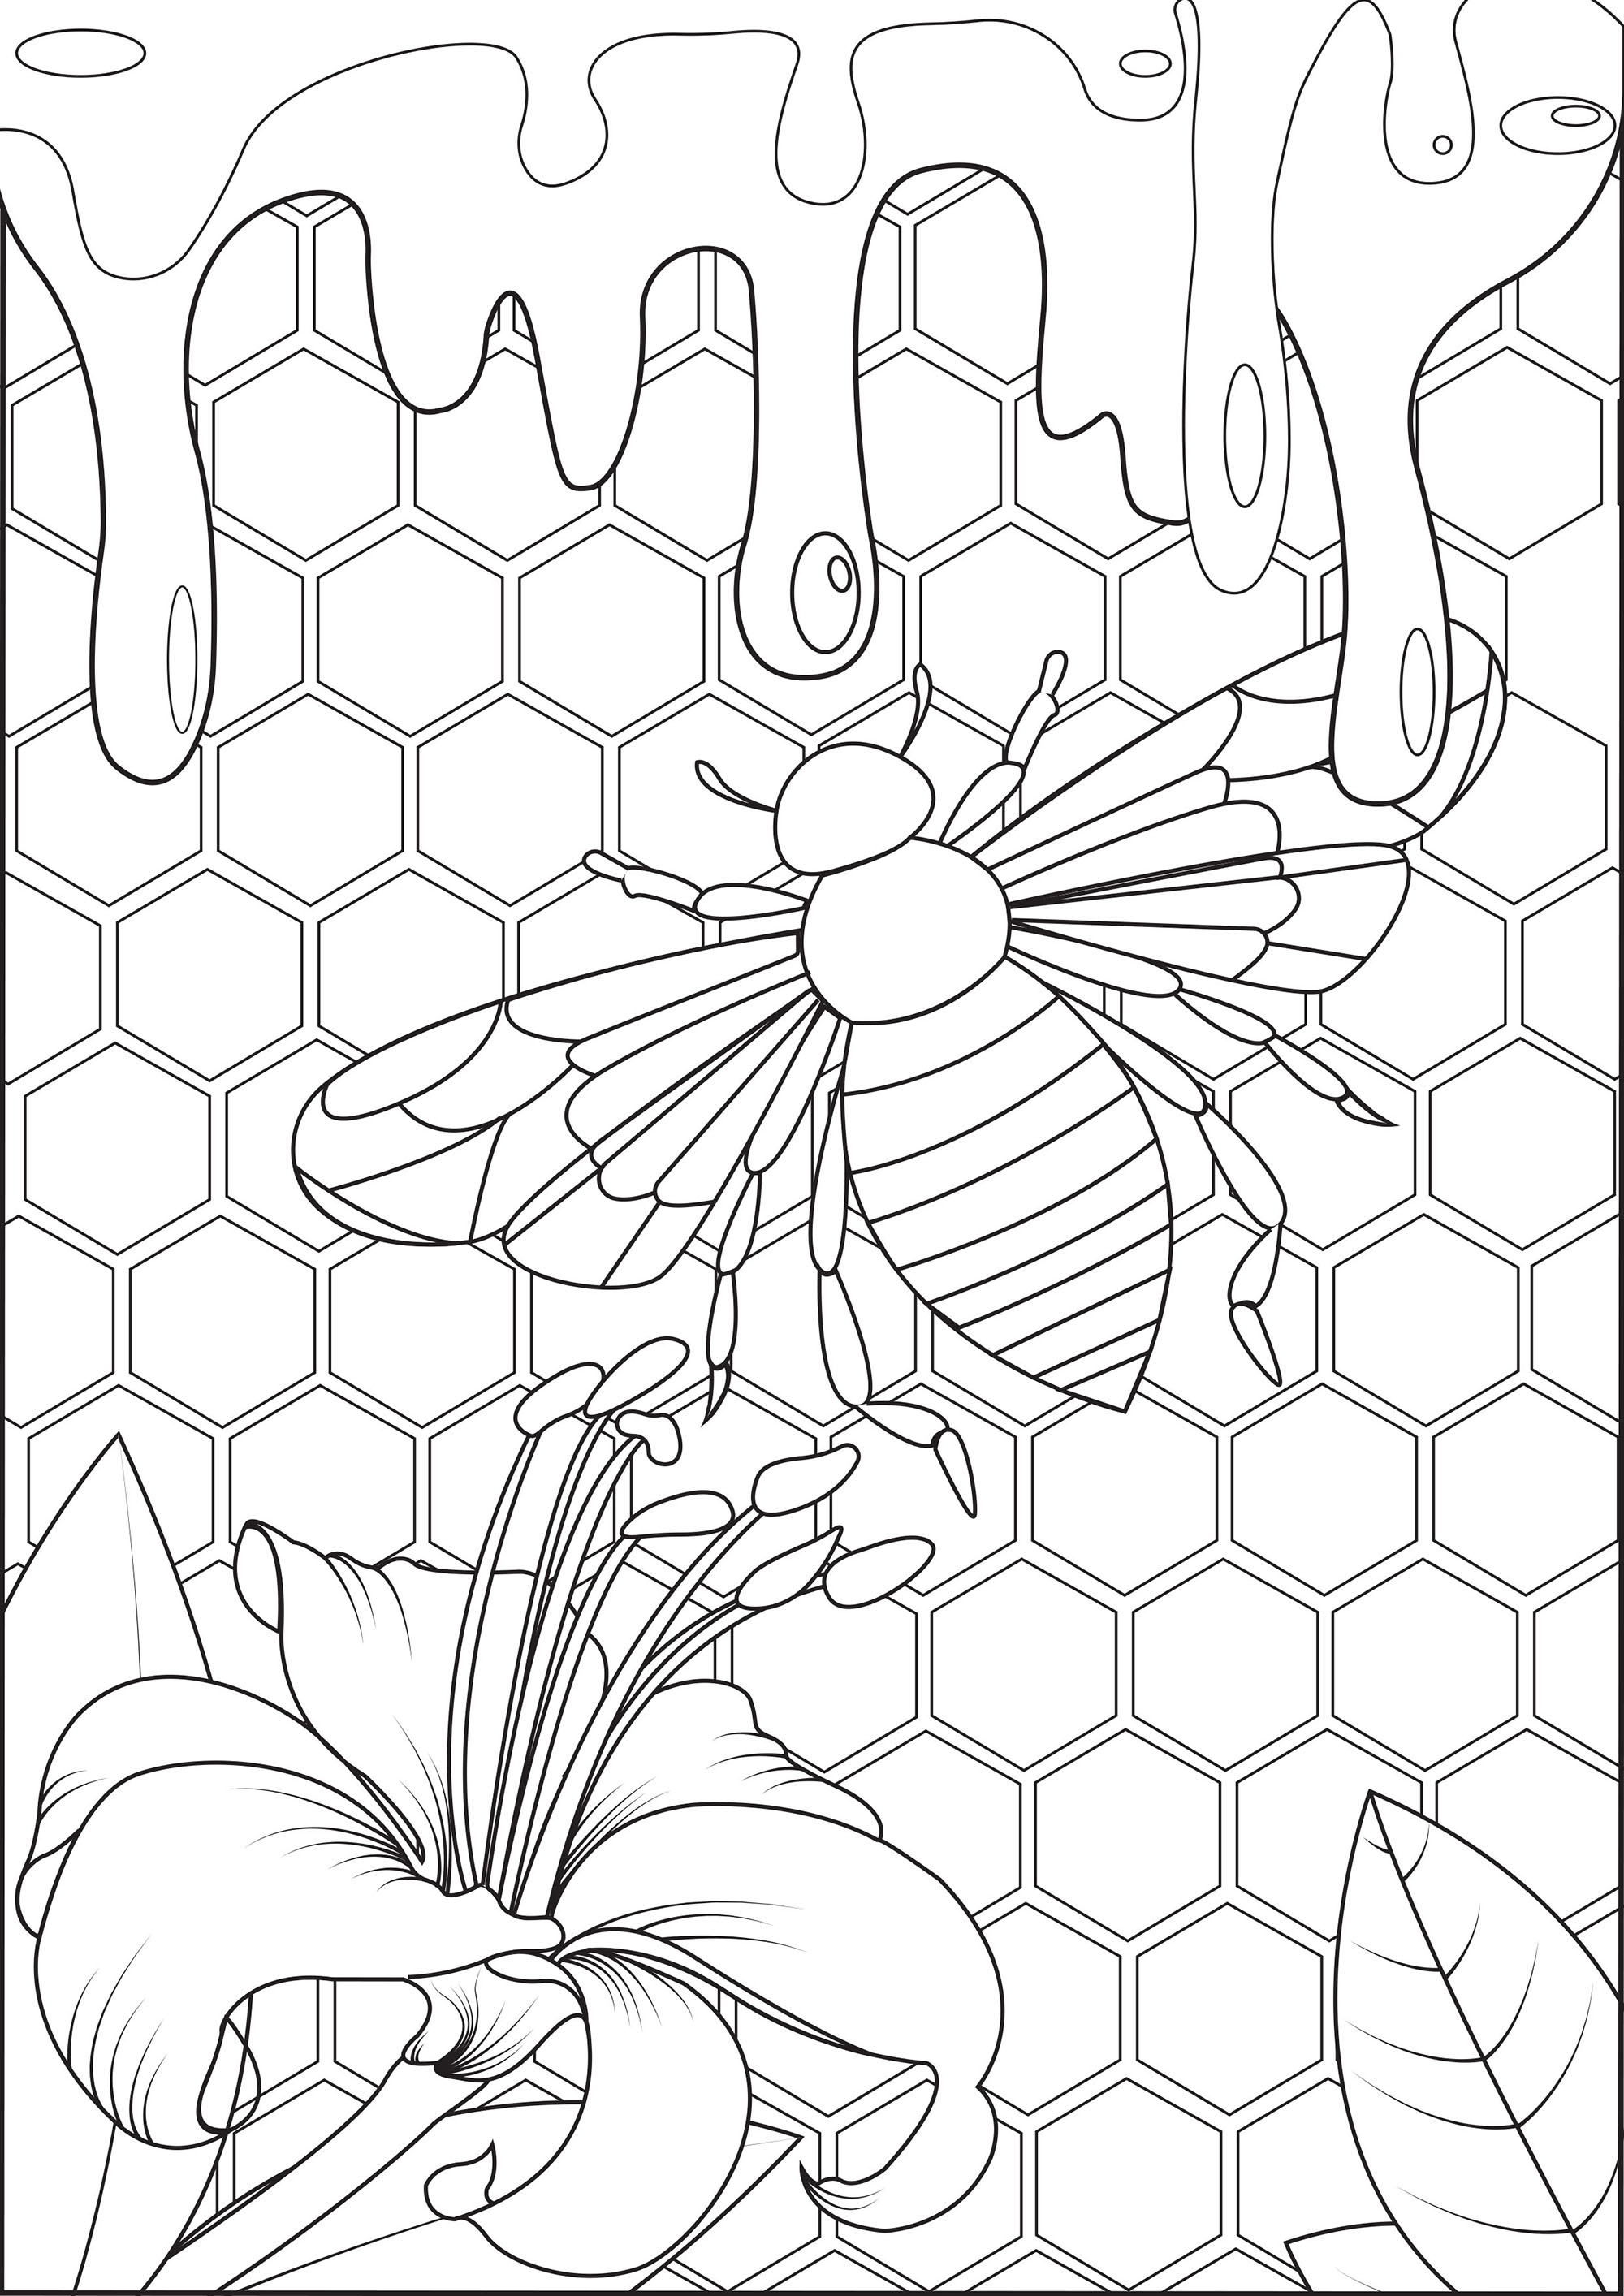 Mergulhe no coração da colmeia e prove este mel fresco!. Este desenho para colorir é um convite para mergulhar no mundo das abelhas e descobrir o seu mundo ...